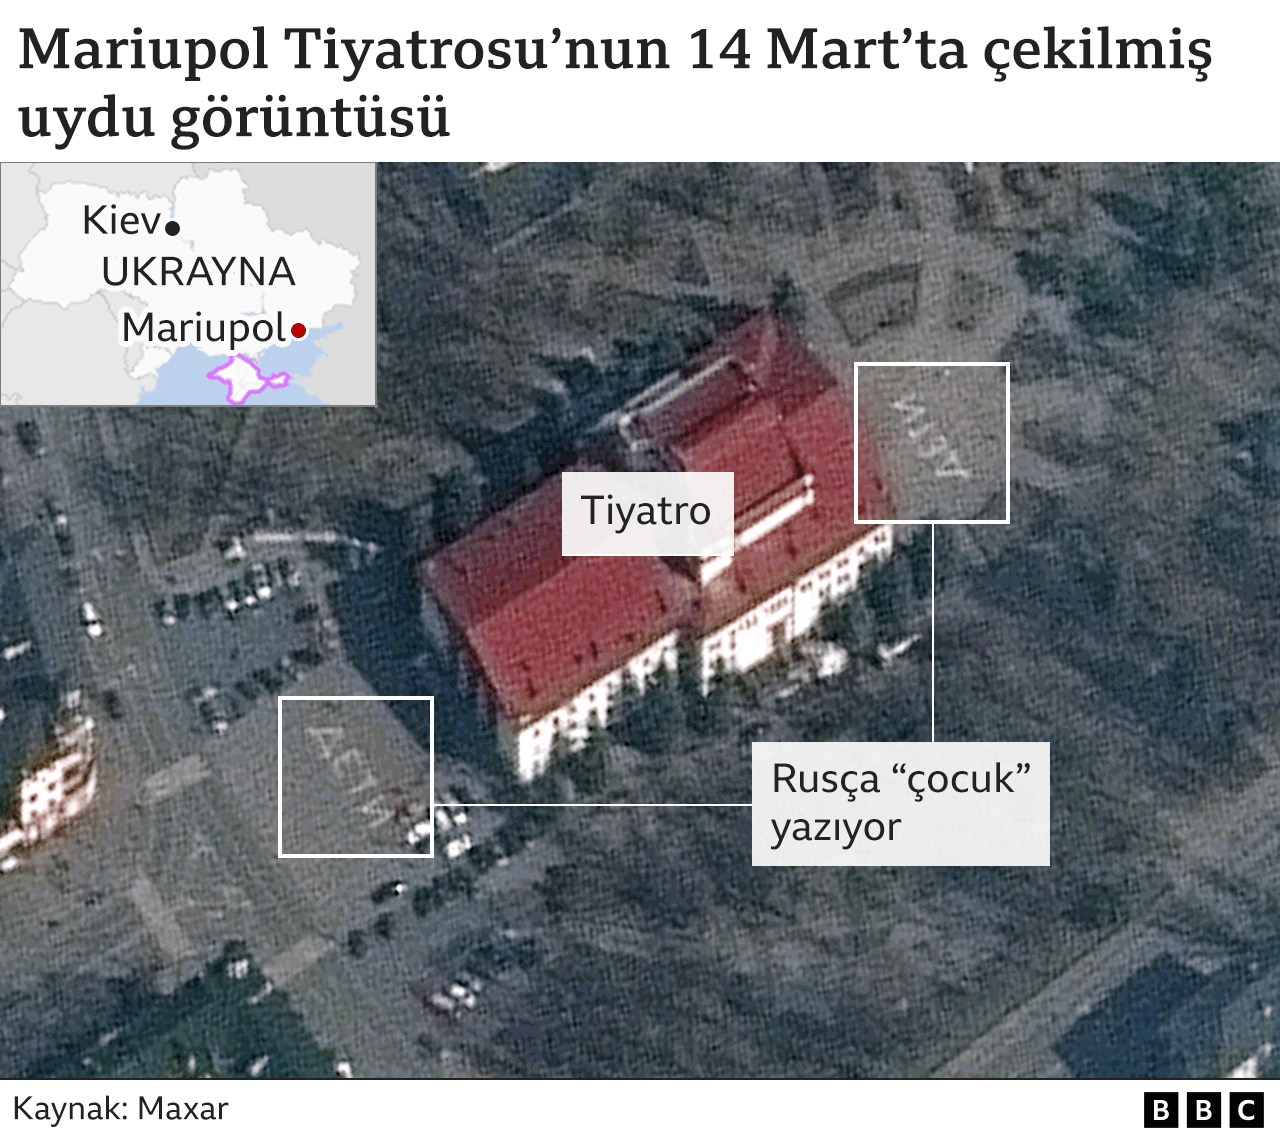 Mariupol tiyatrosunun bombardıman öncesi uydu görüntüsü